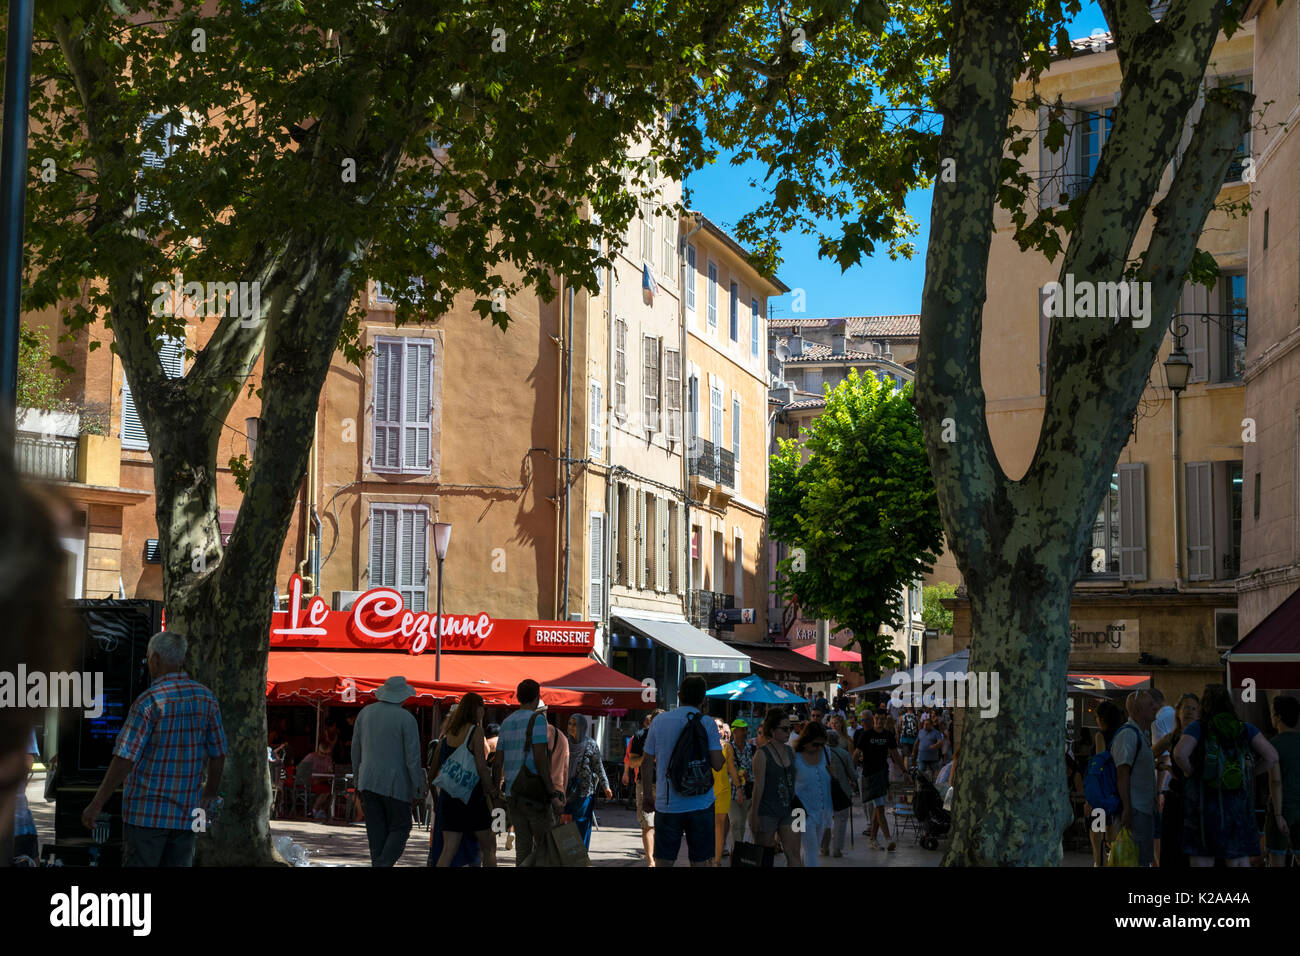 Le Cezanne Brasserie in Aix-en-Provence, Provence-Alpes-Côte d'Azur, regione a sud della Francia. Architettura, brasserie e cafe bar ristoranti Foto Stock